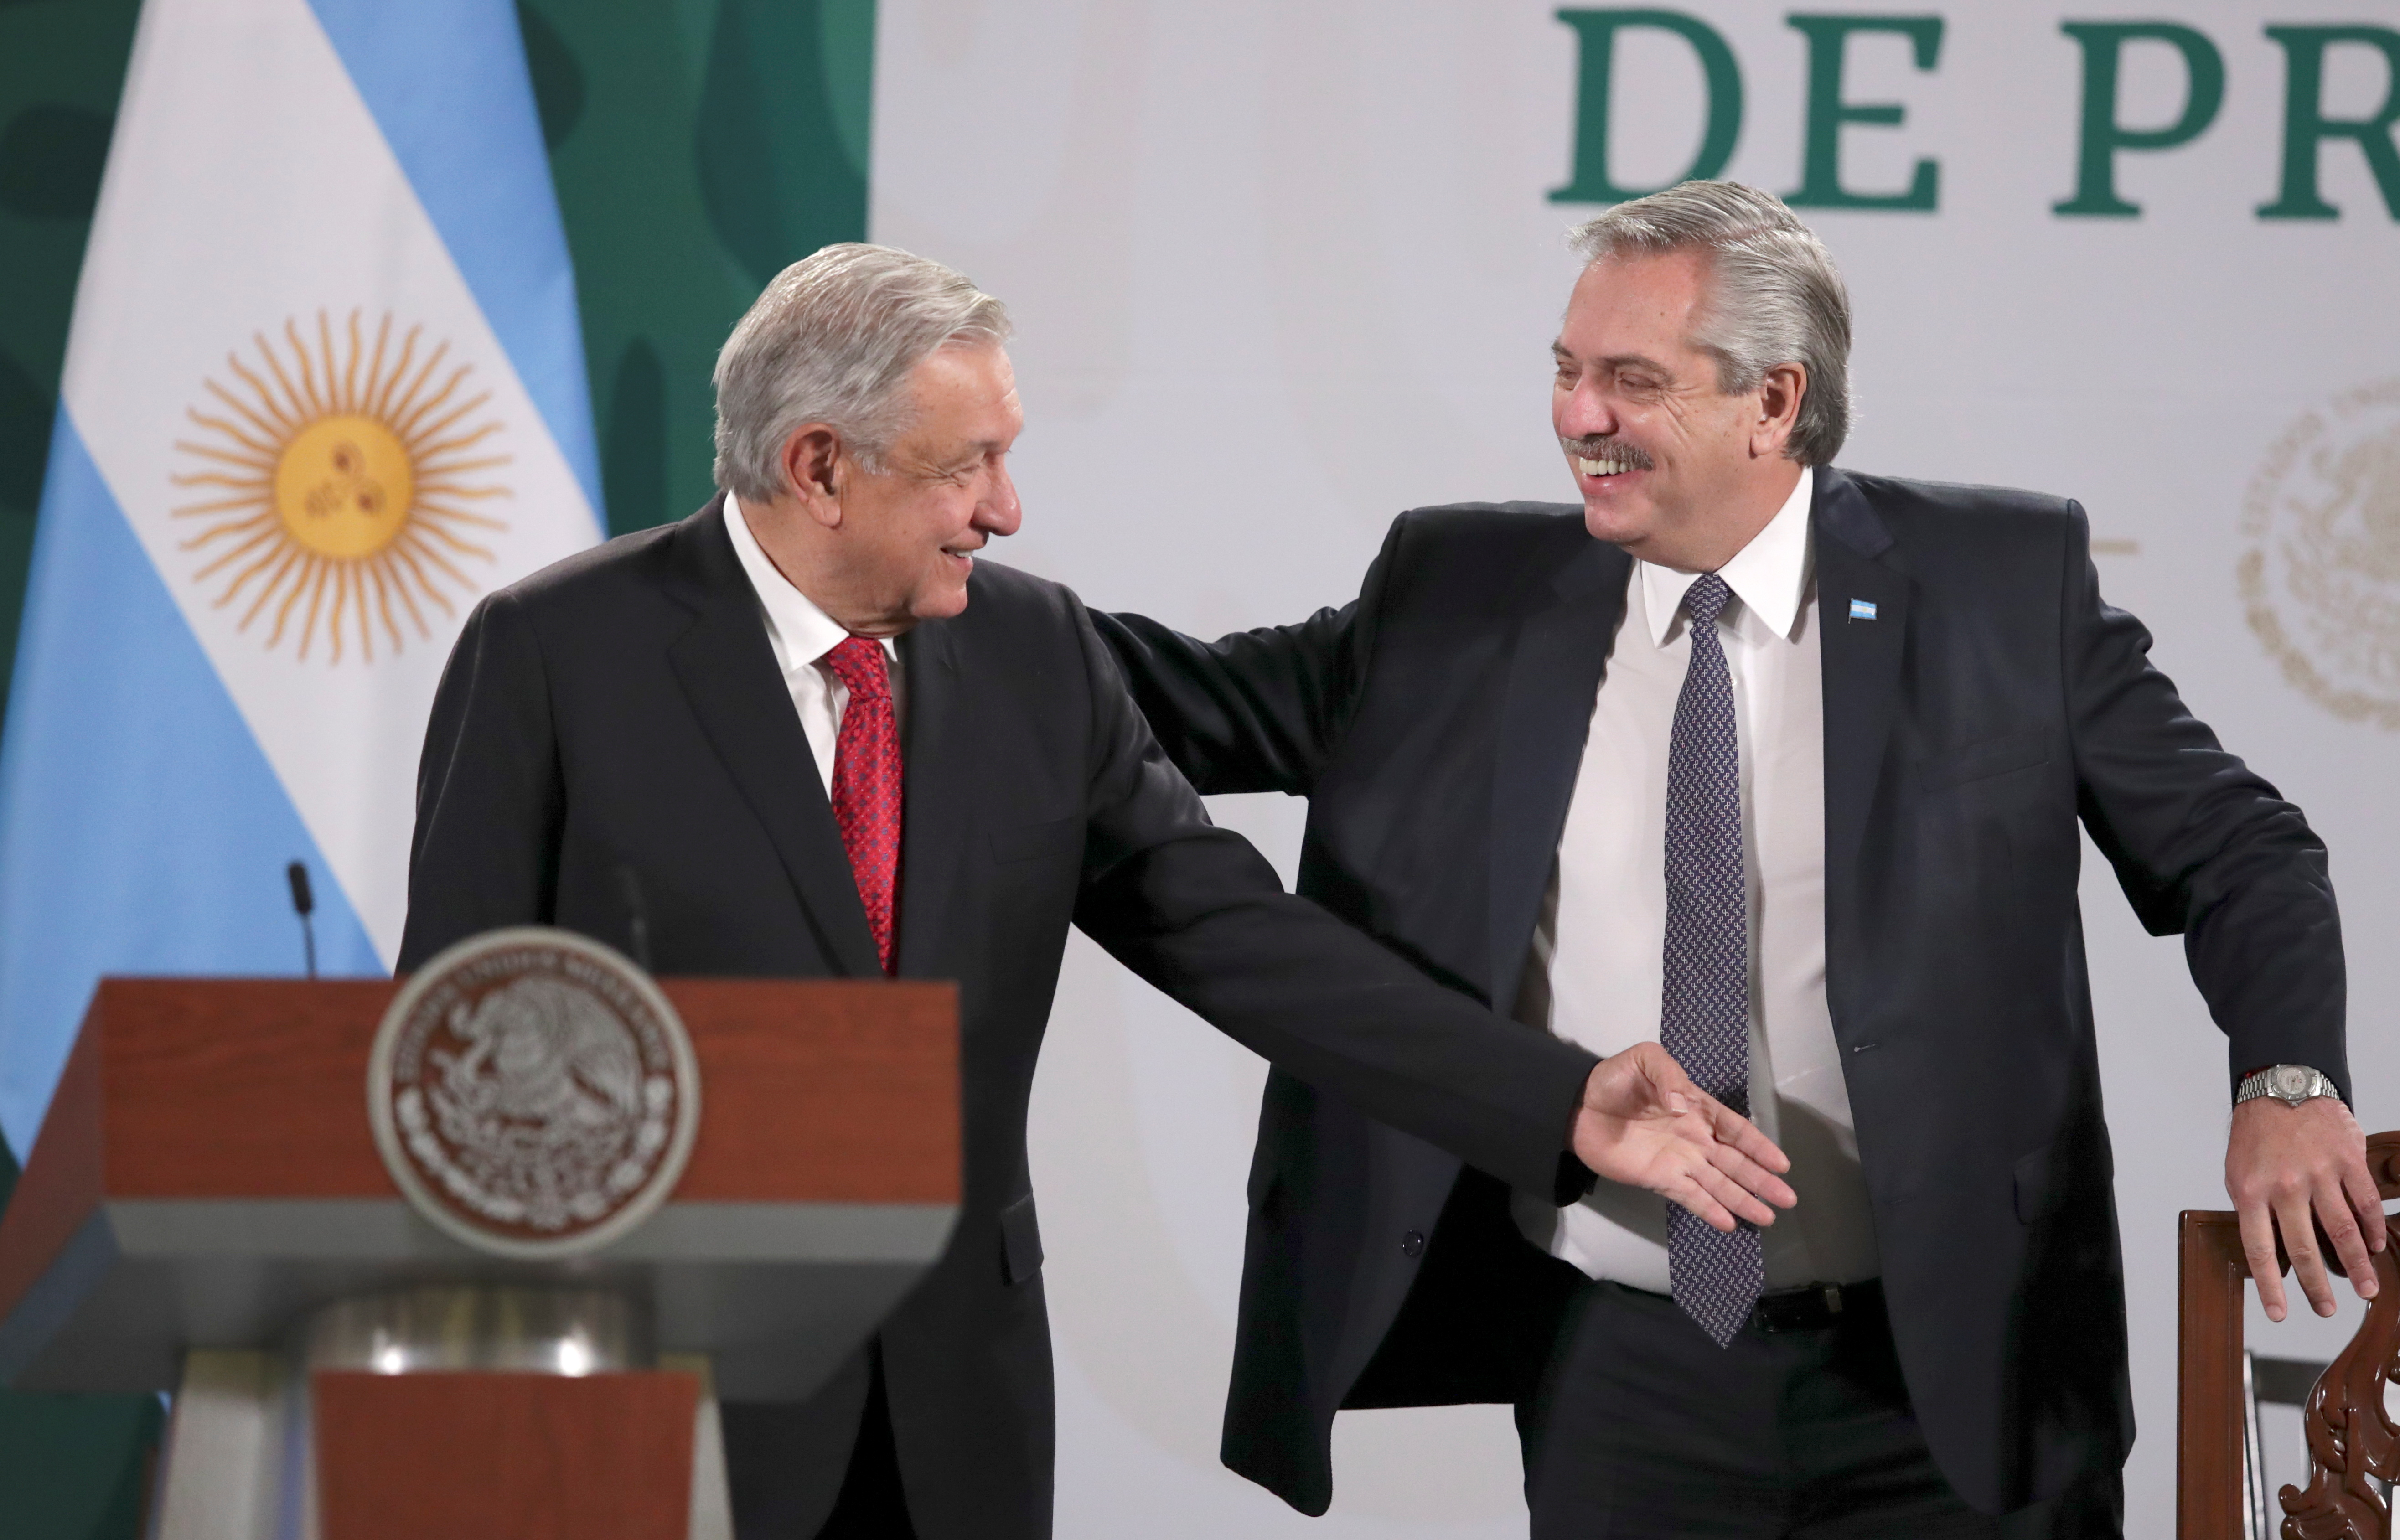 El Presidente apuesta ahora a un acuerdo con México, Cuba y otros países para combatir la inflación